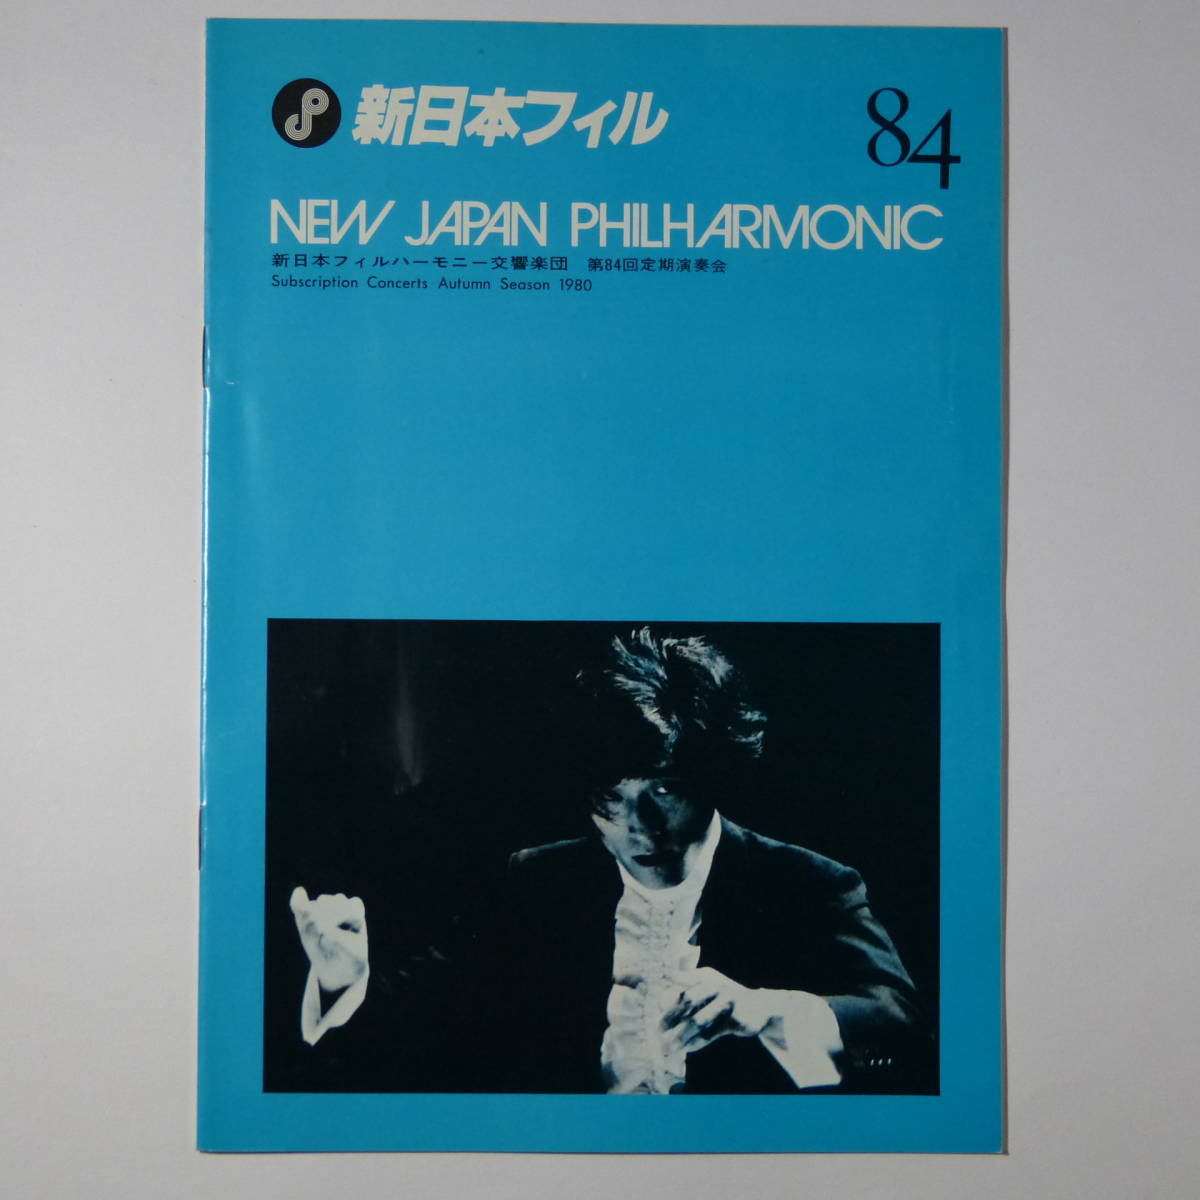  program New Japan Phil - - moni - реверберация приятный . no. 84 раз установленный срок исполнение .1980 год 11 месяц 19 день маленький Izumi мир . палец .emanyu L * Axe ( фортепьяно )